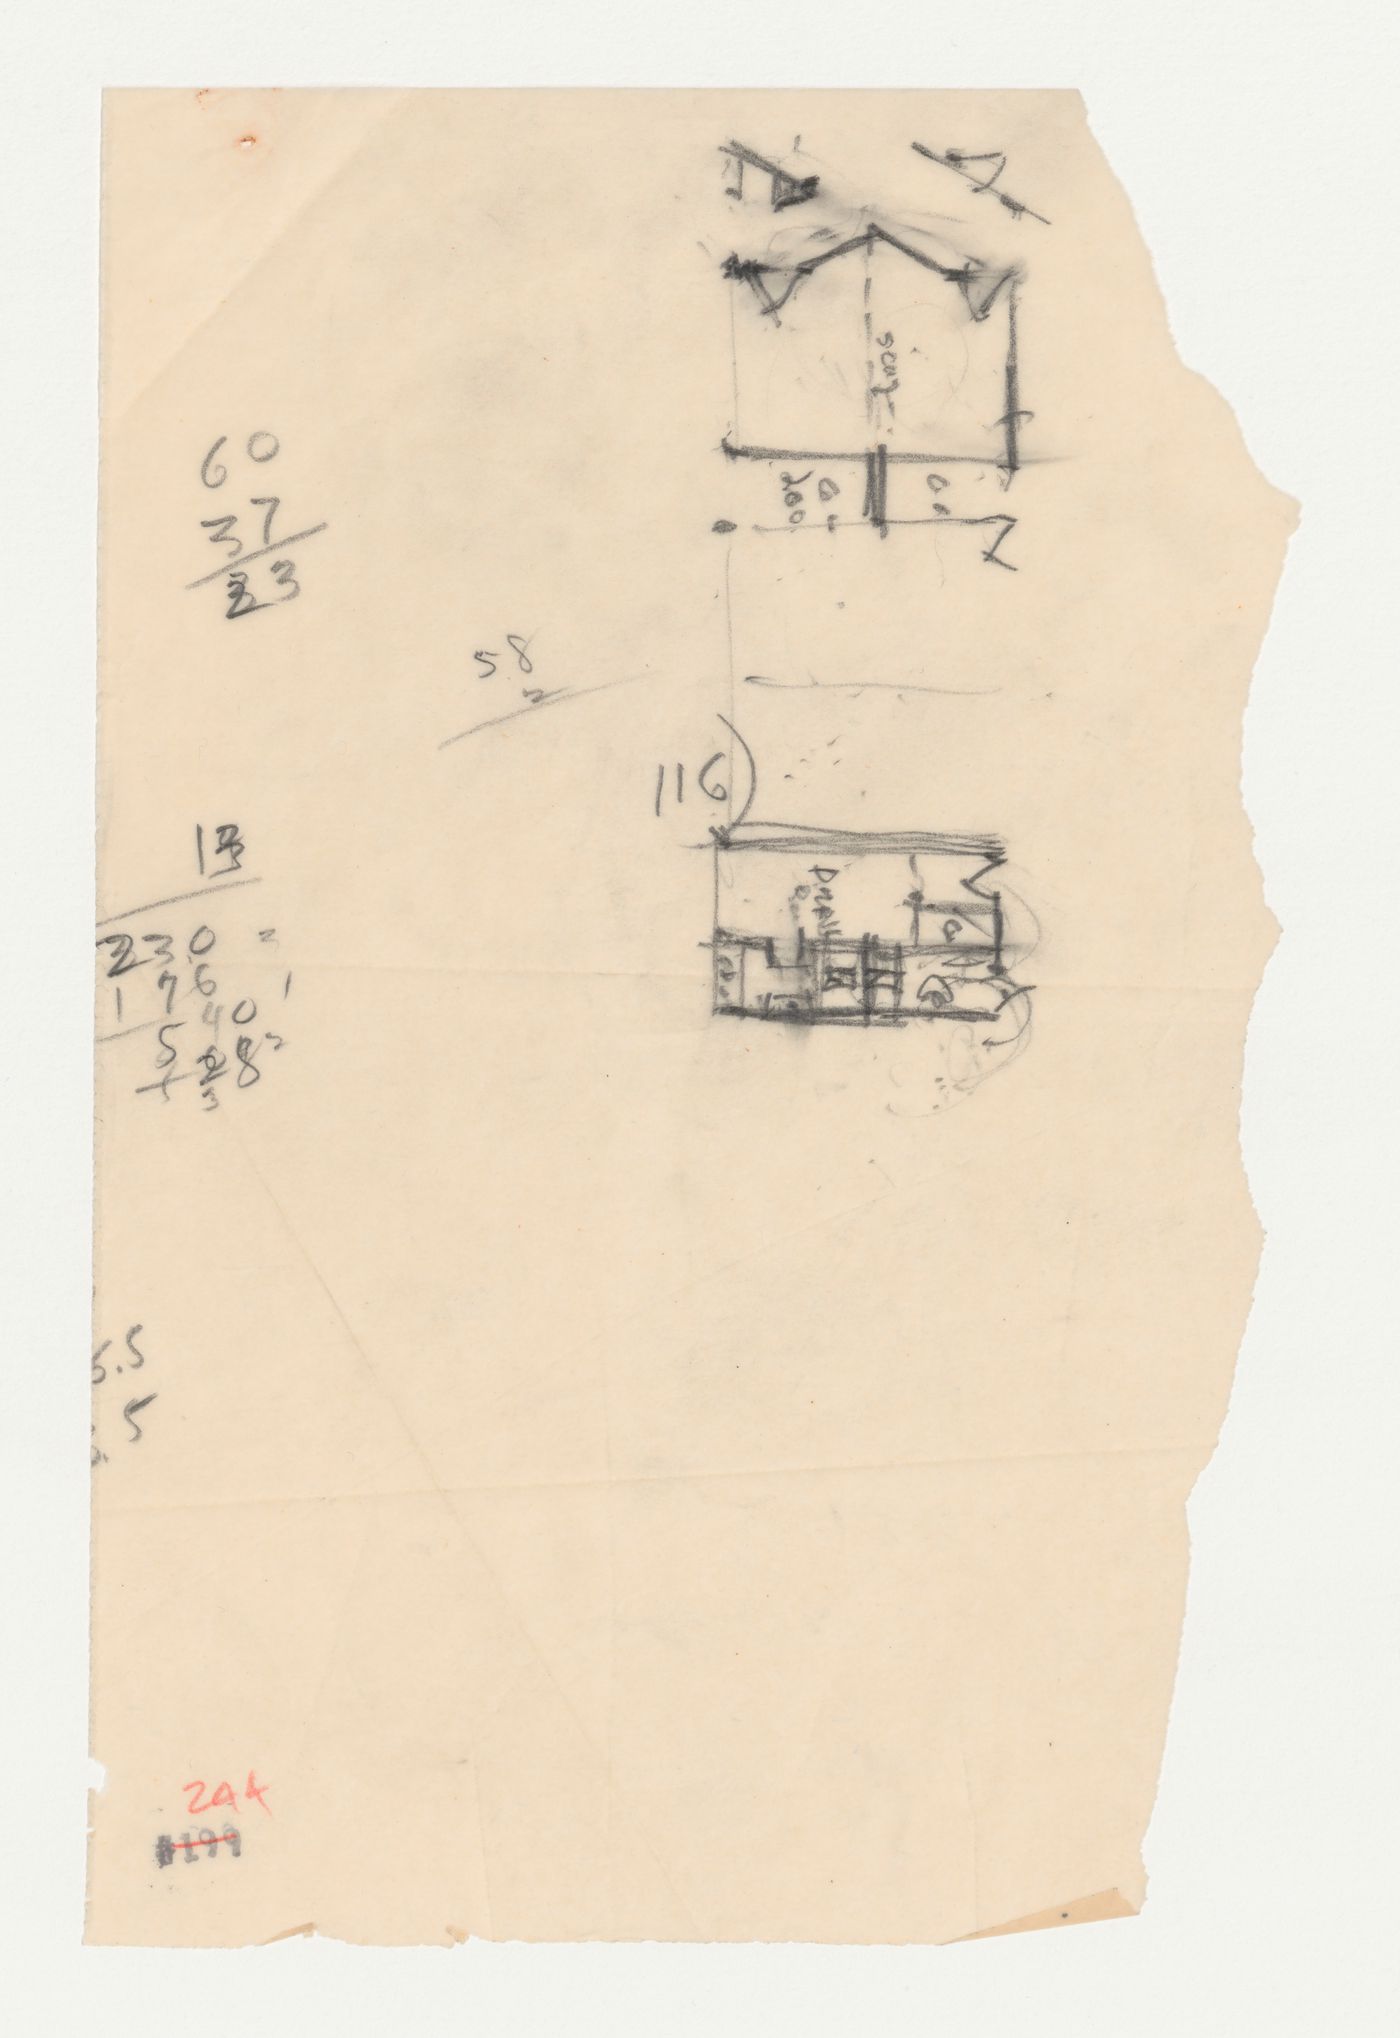 Swedenborg Memorial Chapel, El Cerrito, California: Sketch plans and calculations